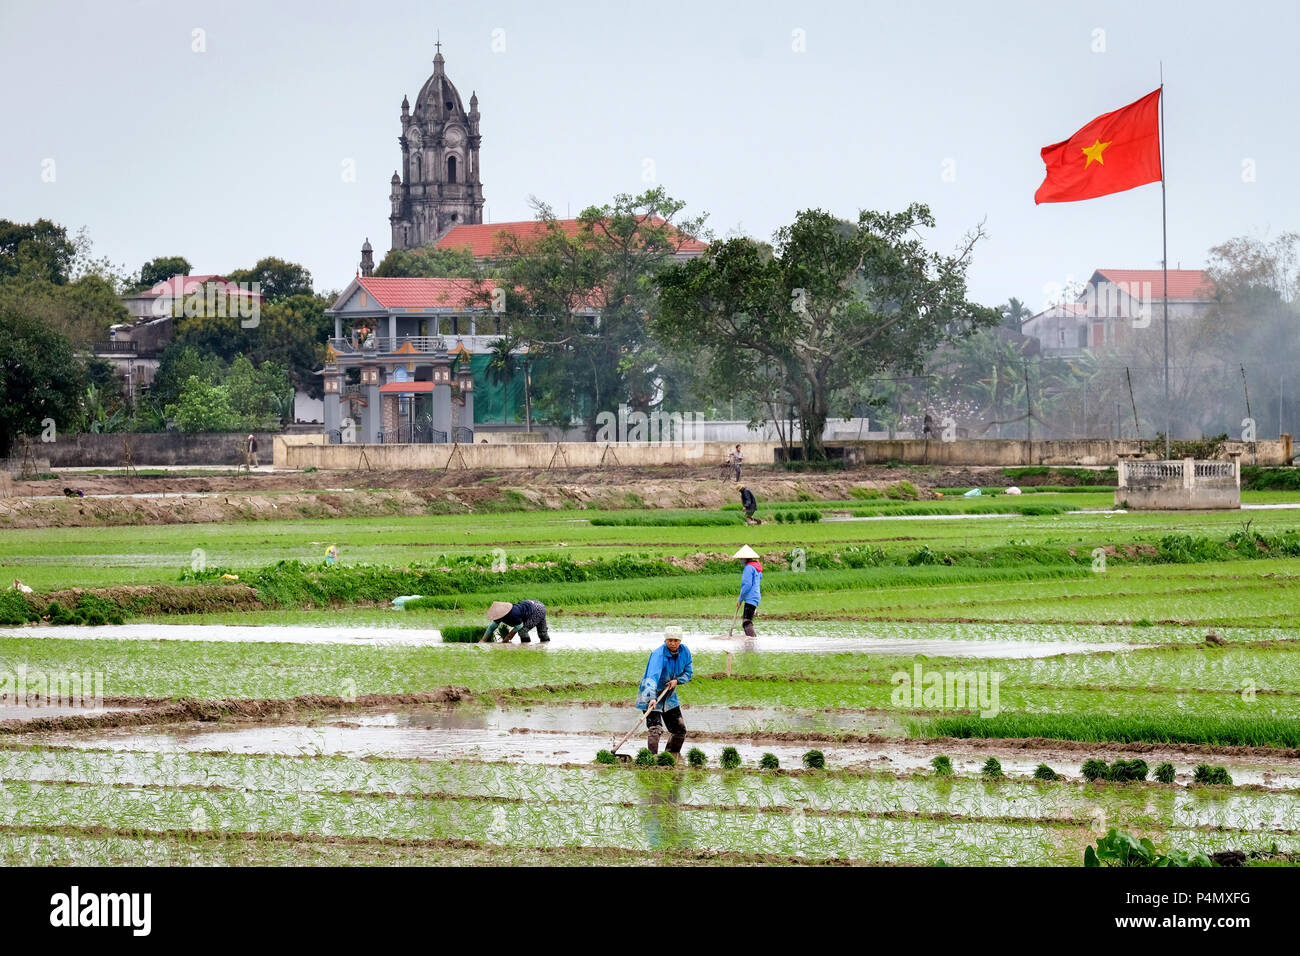 Frau einpflanzen Reis in einem Reisfeld, Vietnam rote Land Flagge und die katholische Kirche im Hintergrund. Nam Dinh Provinz, Vietnam-Frauen pflanzen Reis, Landesfahne Vietnams in einem Reisfeld in der Nam Dinh-Provinz, Vietnam Stockfoto